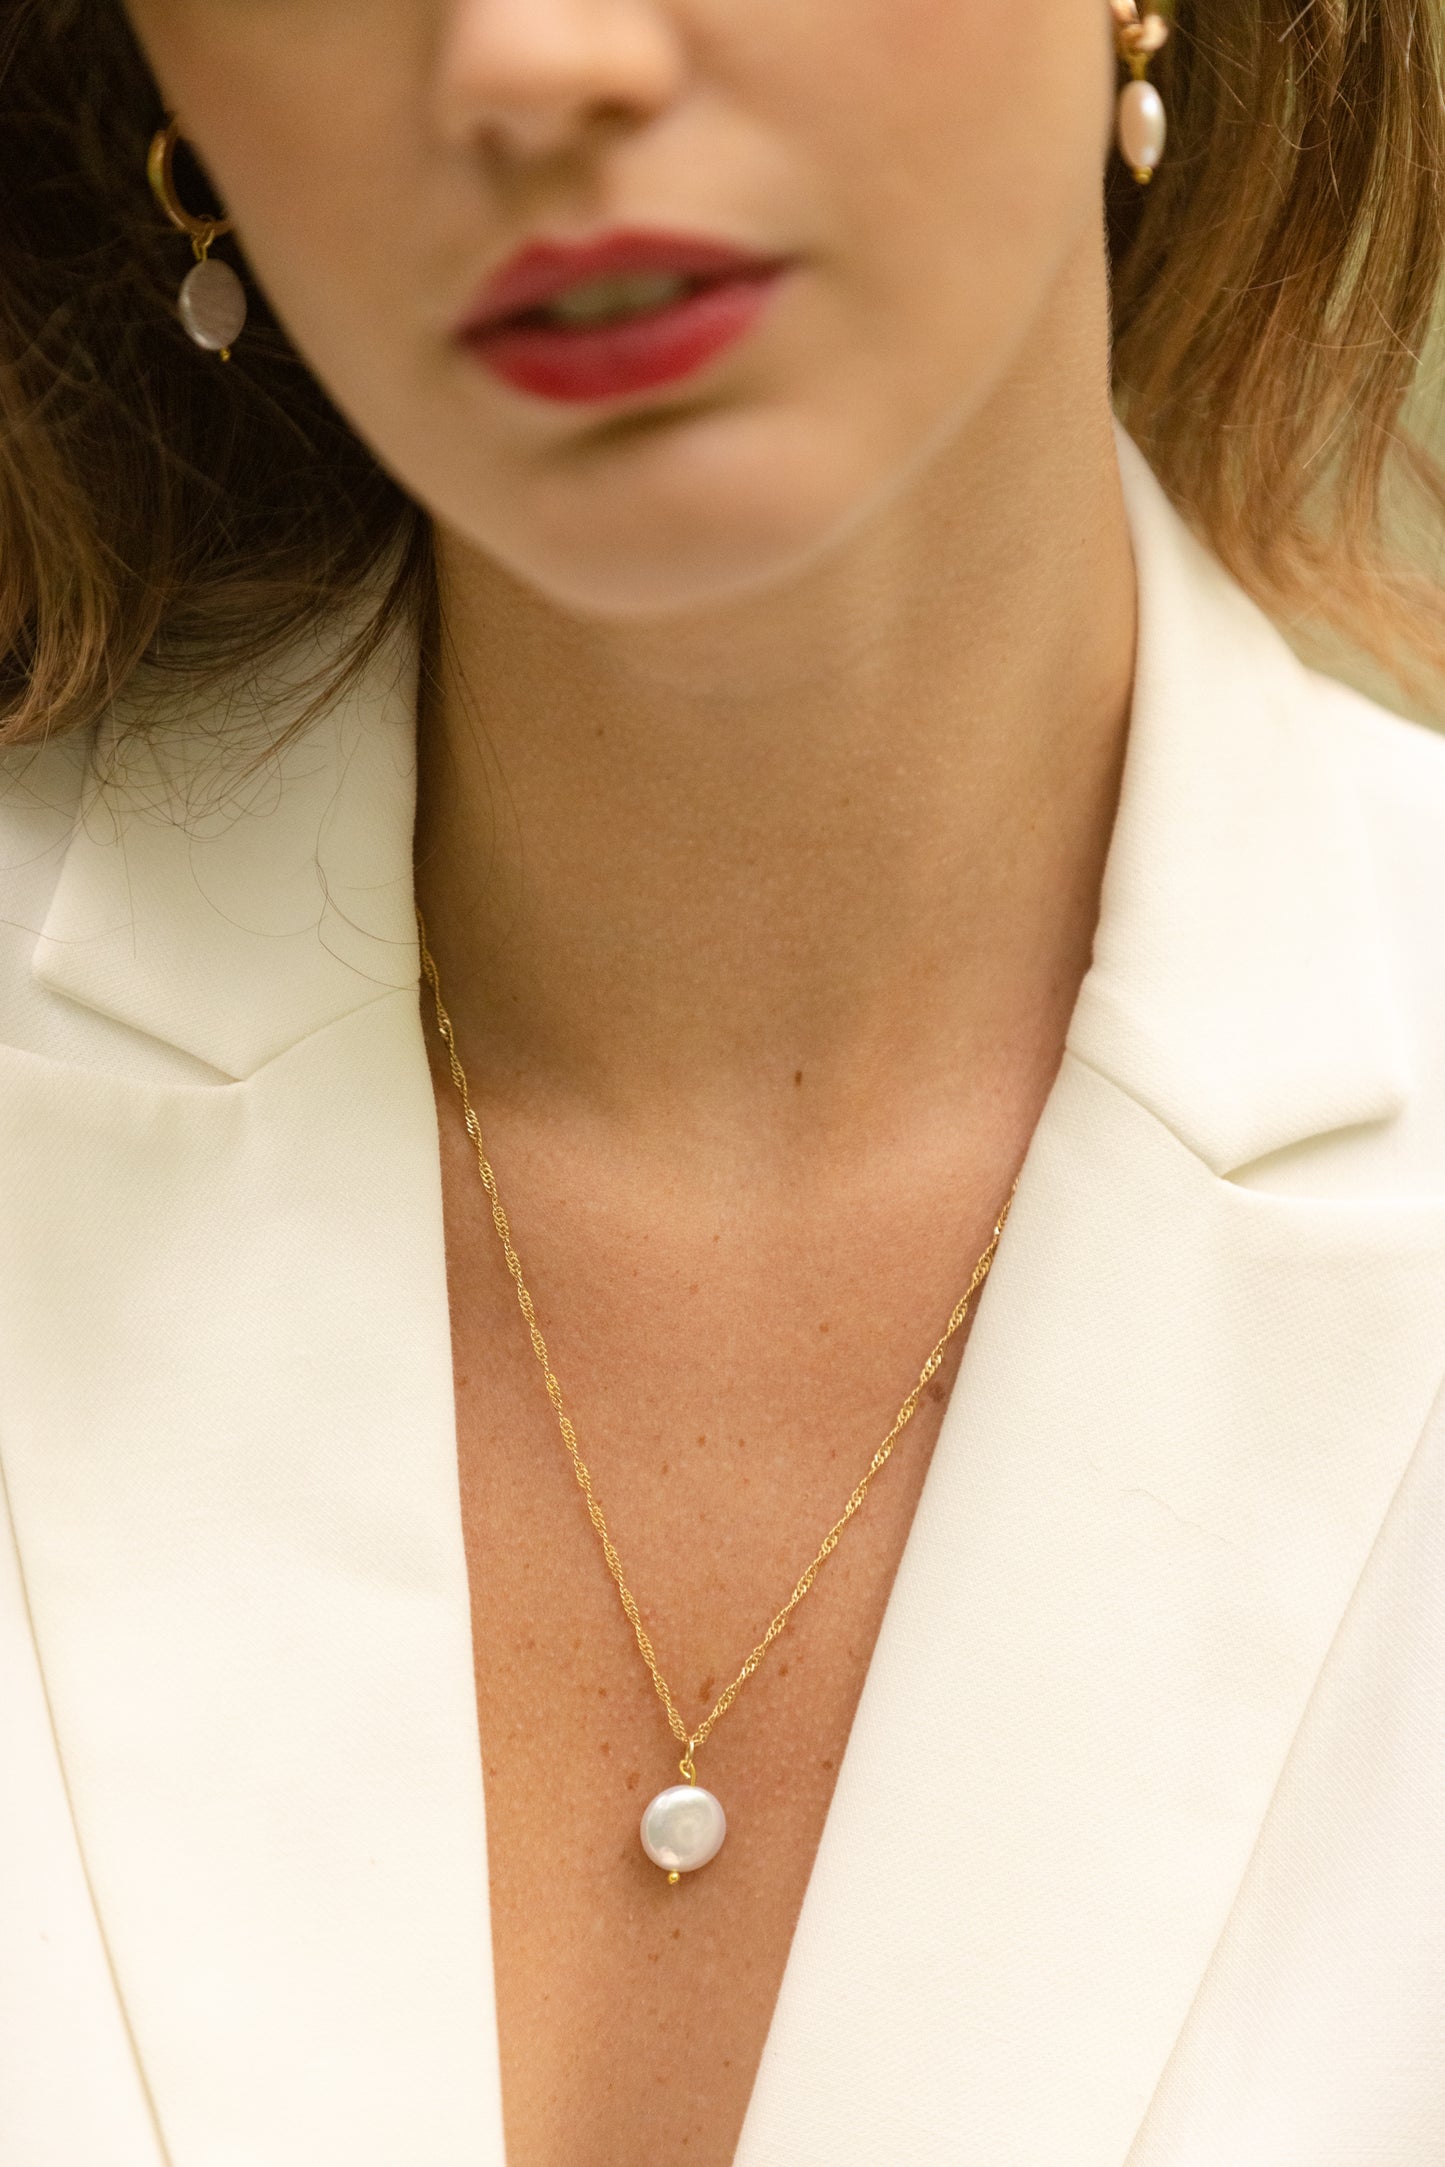 Collier Charline  Ce collier est composé d’une perle naturelle plate accompagnée d’une chaîne en plaqué-or 3 microns.